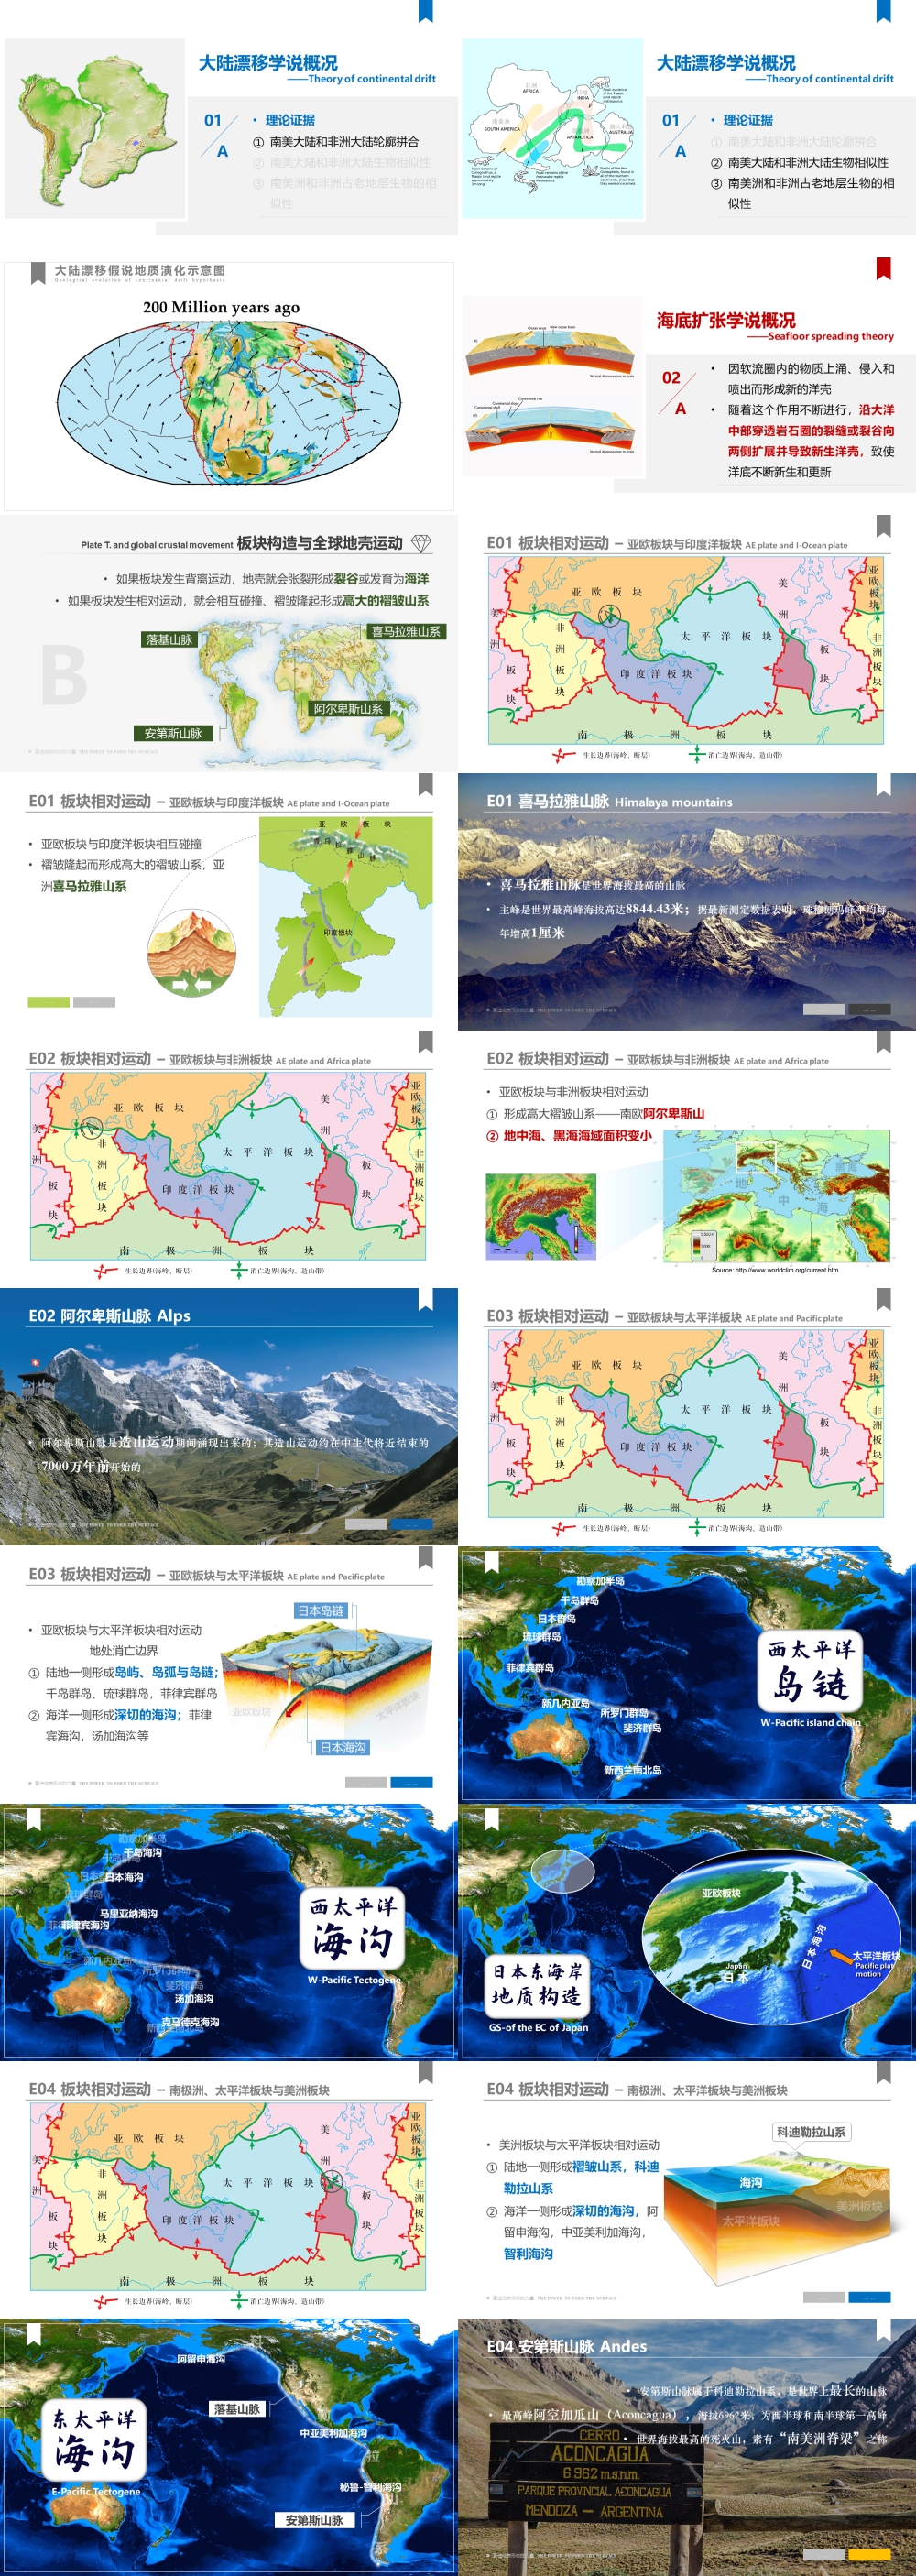 世界地理 第03讲 世界的陆地与海洋 Land -Ocean  [2020版]-1000px-03.jpg